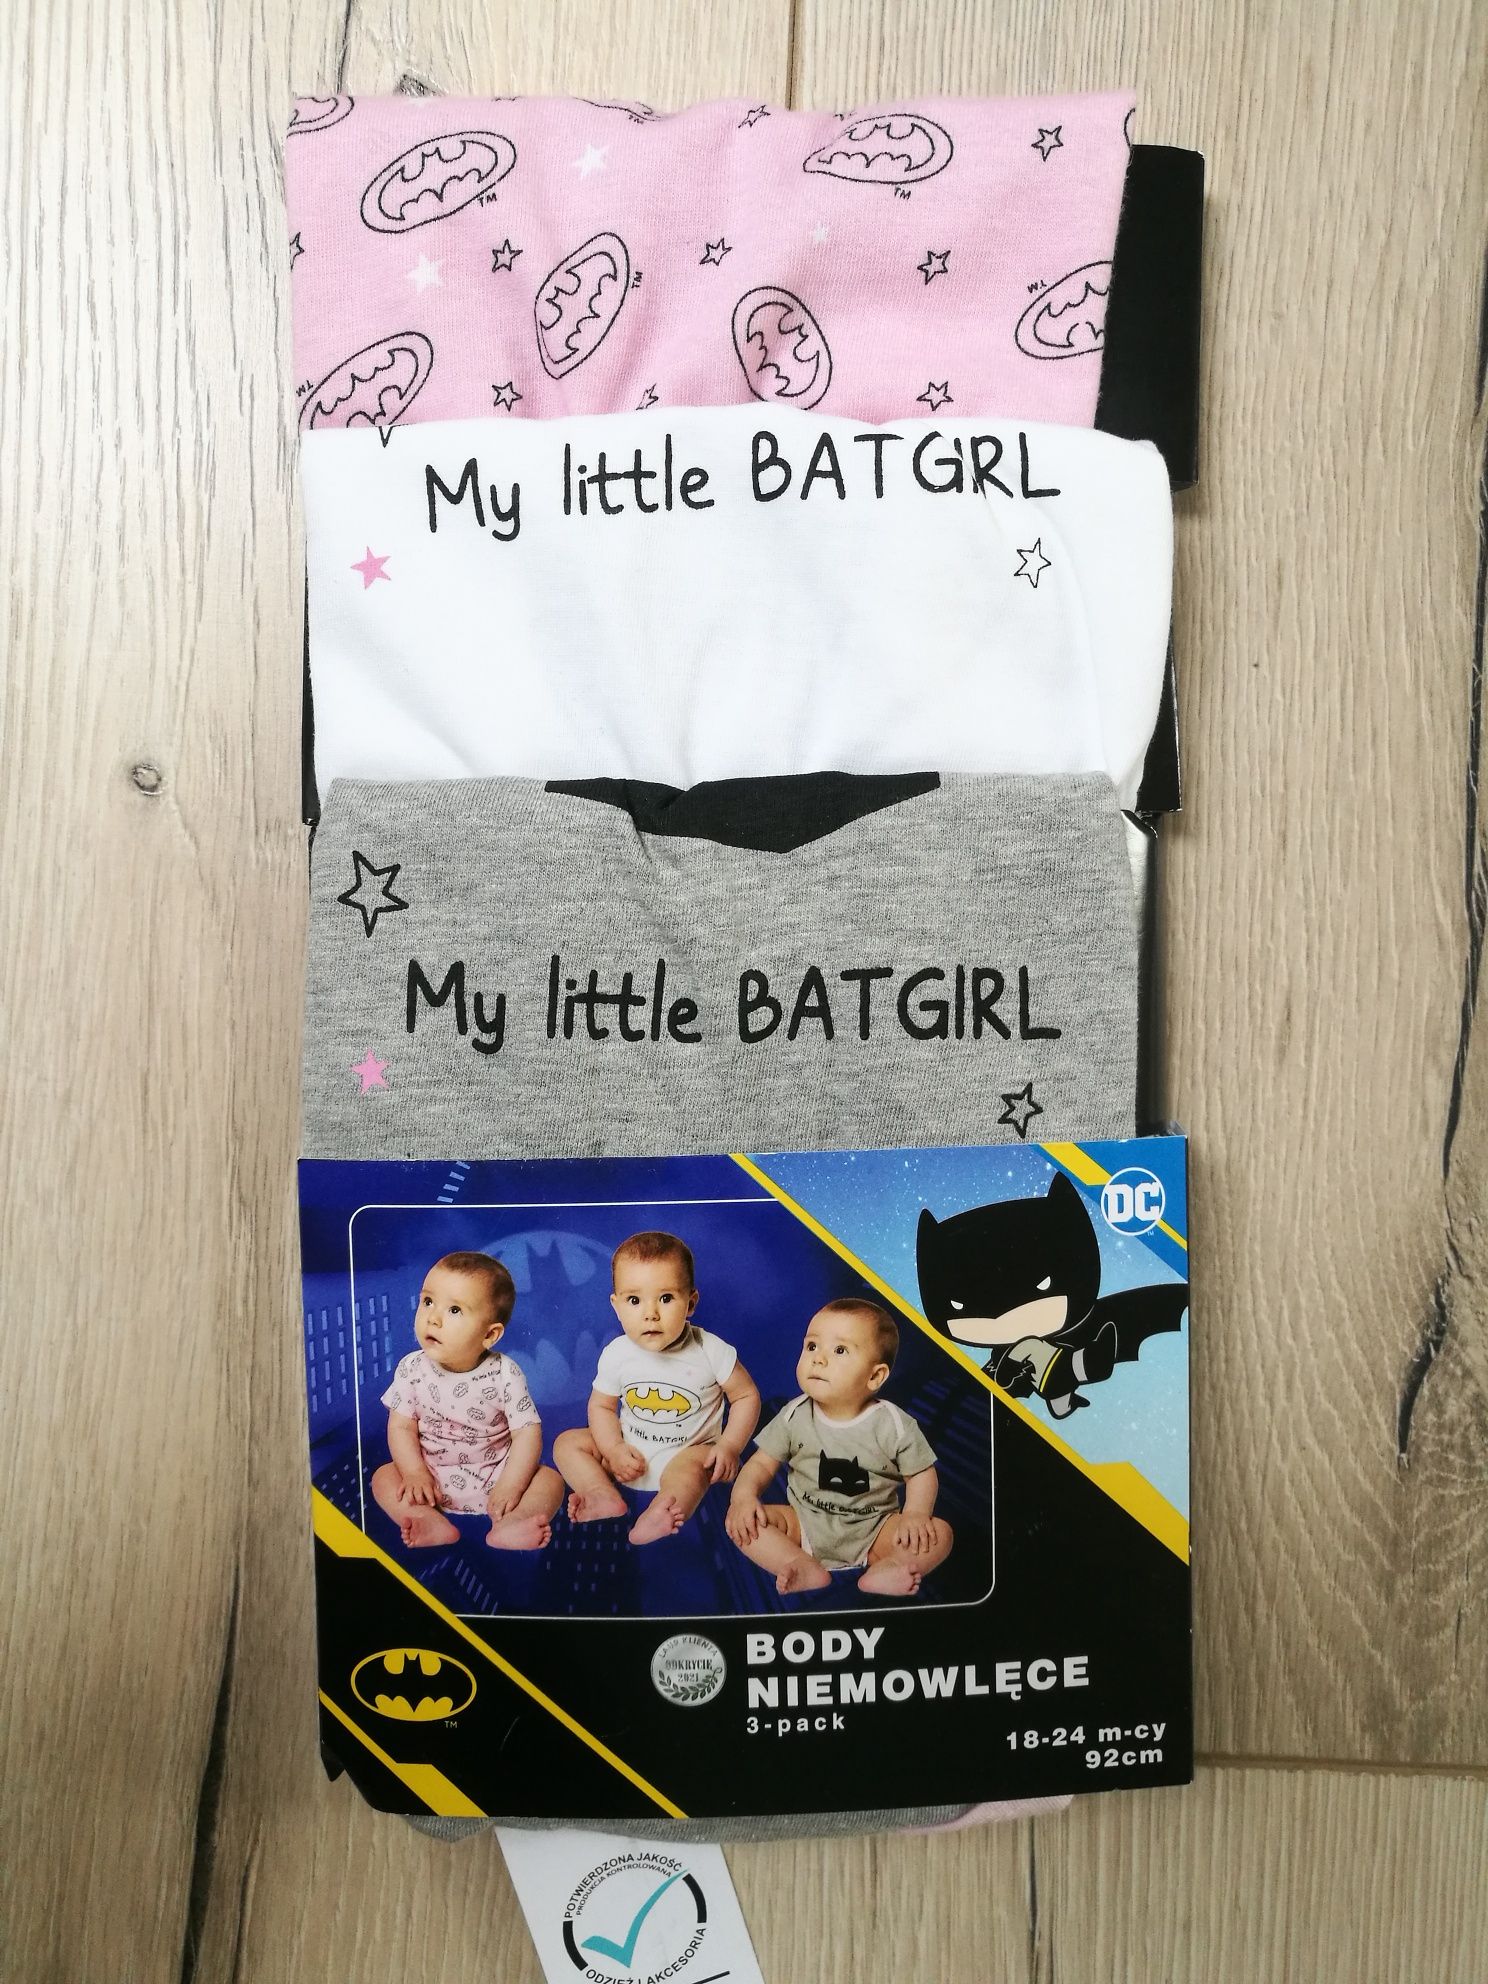 NOWY zestaw Little Batgirl > pościel do łóżeczka + 3-pack body